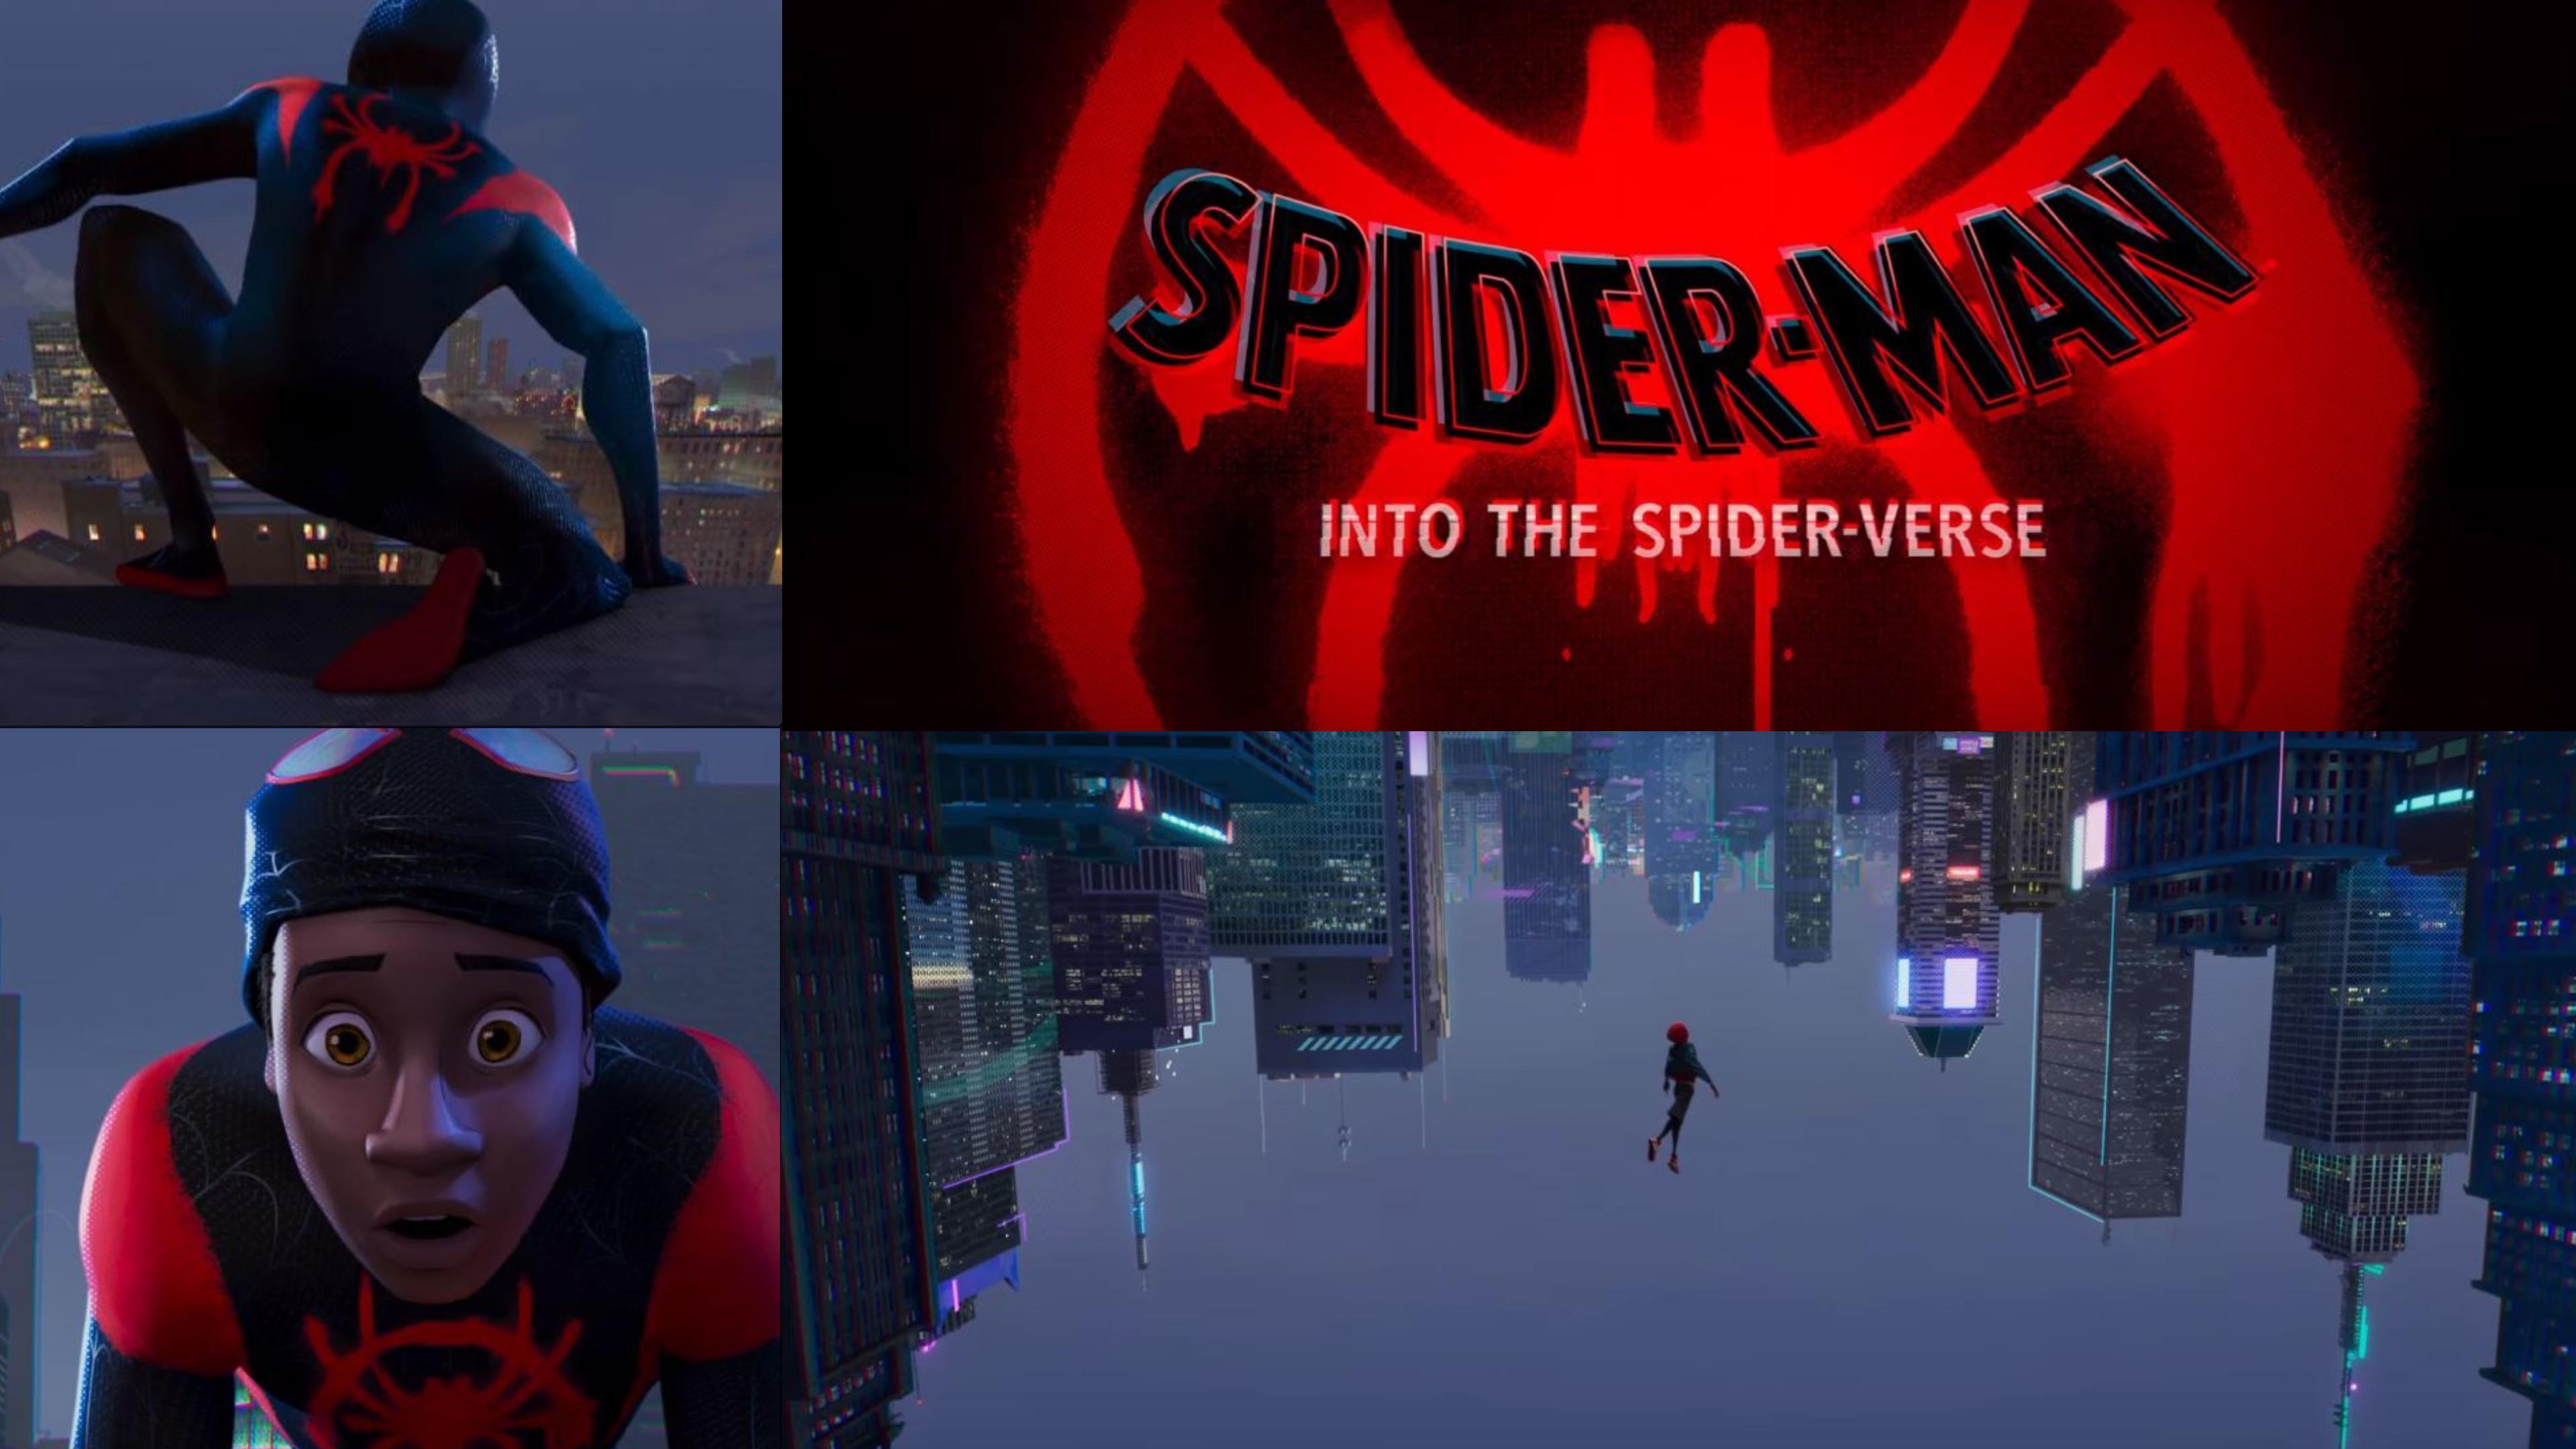 Spider-Man Into The Spider-Verse